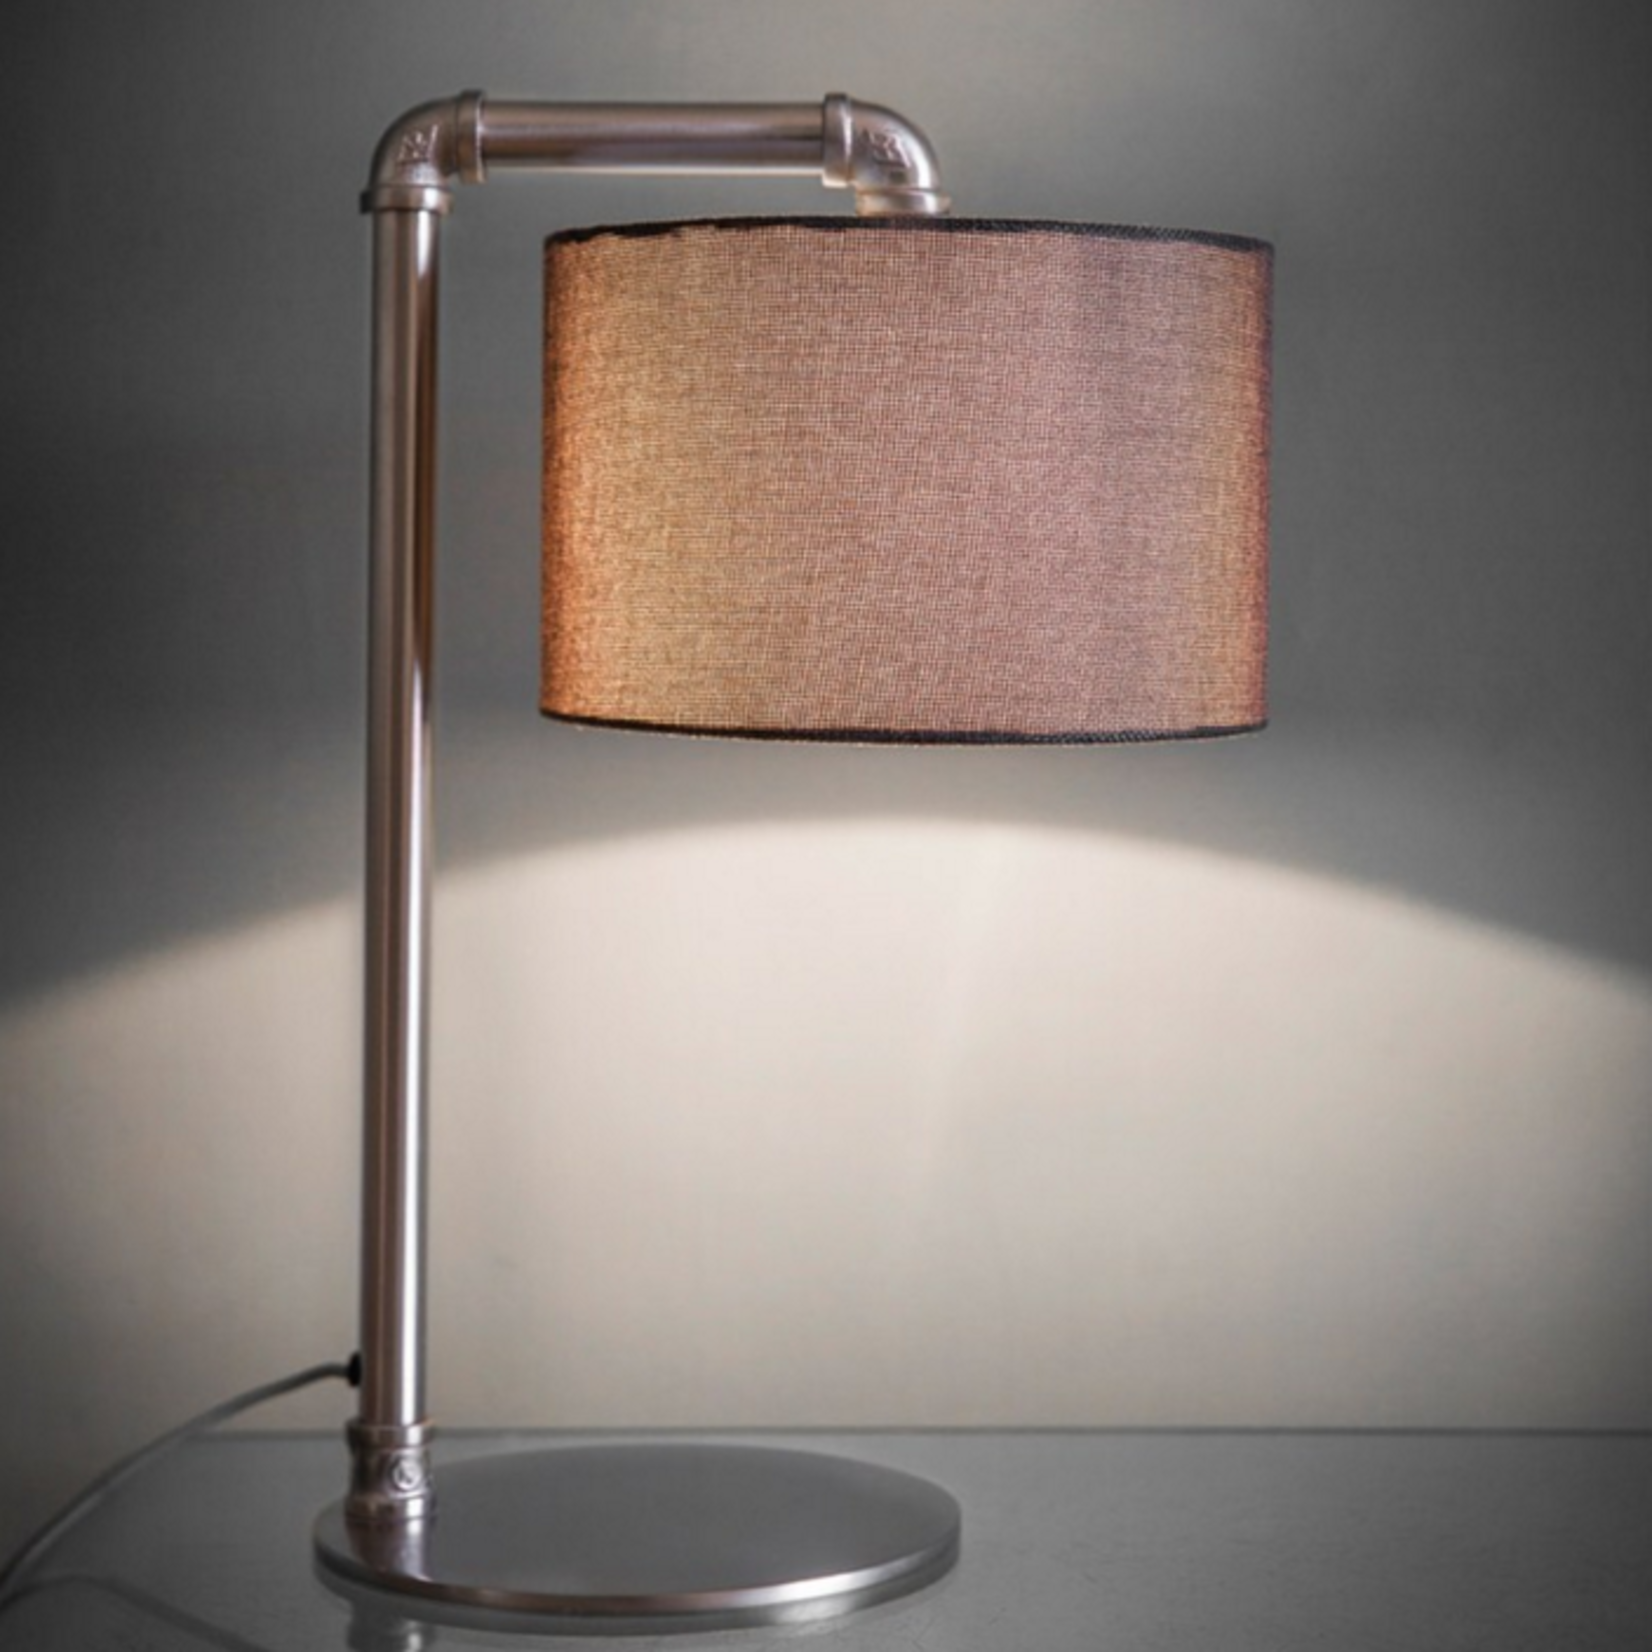 GT Hotel Table lamp Light - Matt Nickel